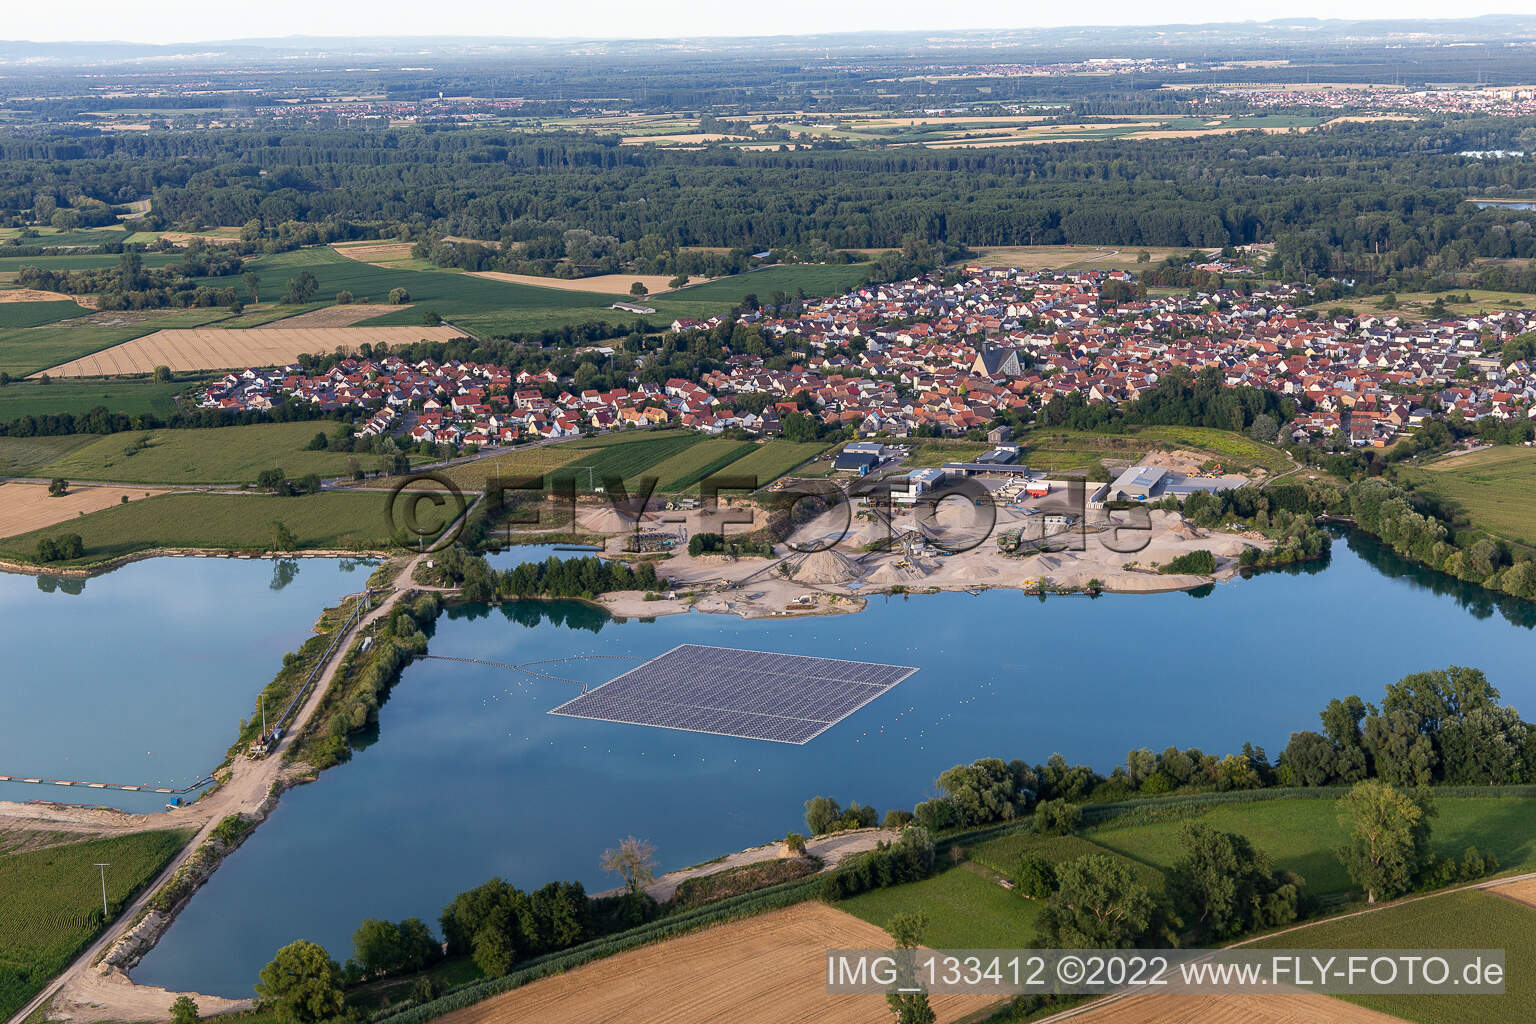 Vue aérienne de Système photovoltaïque flottant à Leimersheim dans le département Rhénanie-Palatinat, Allemagne